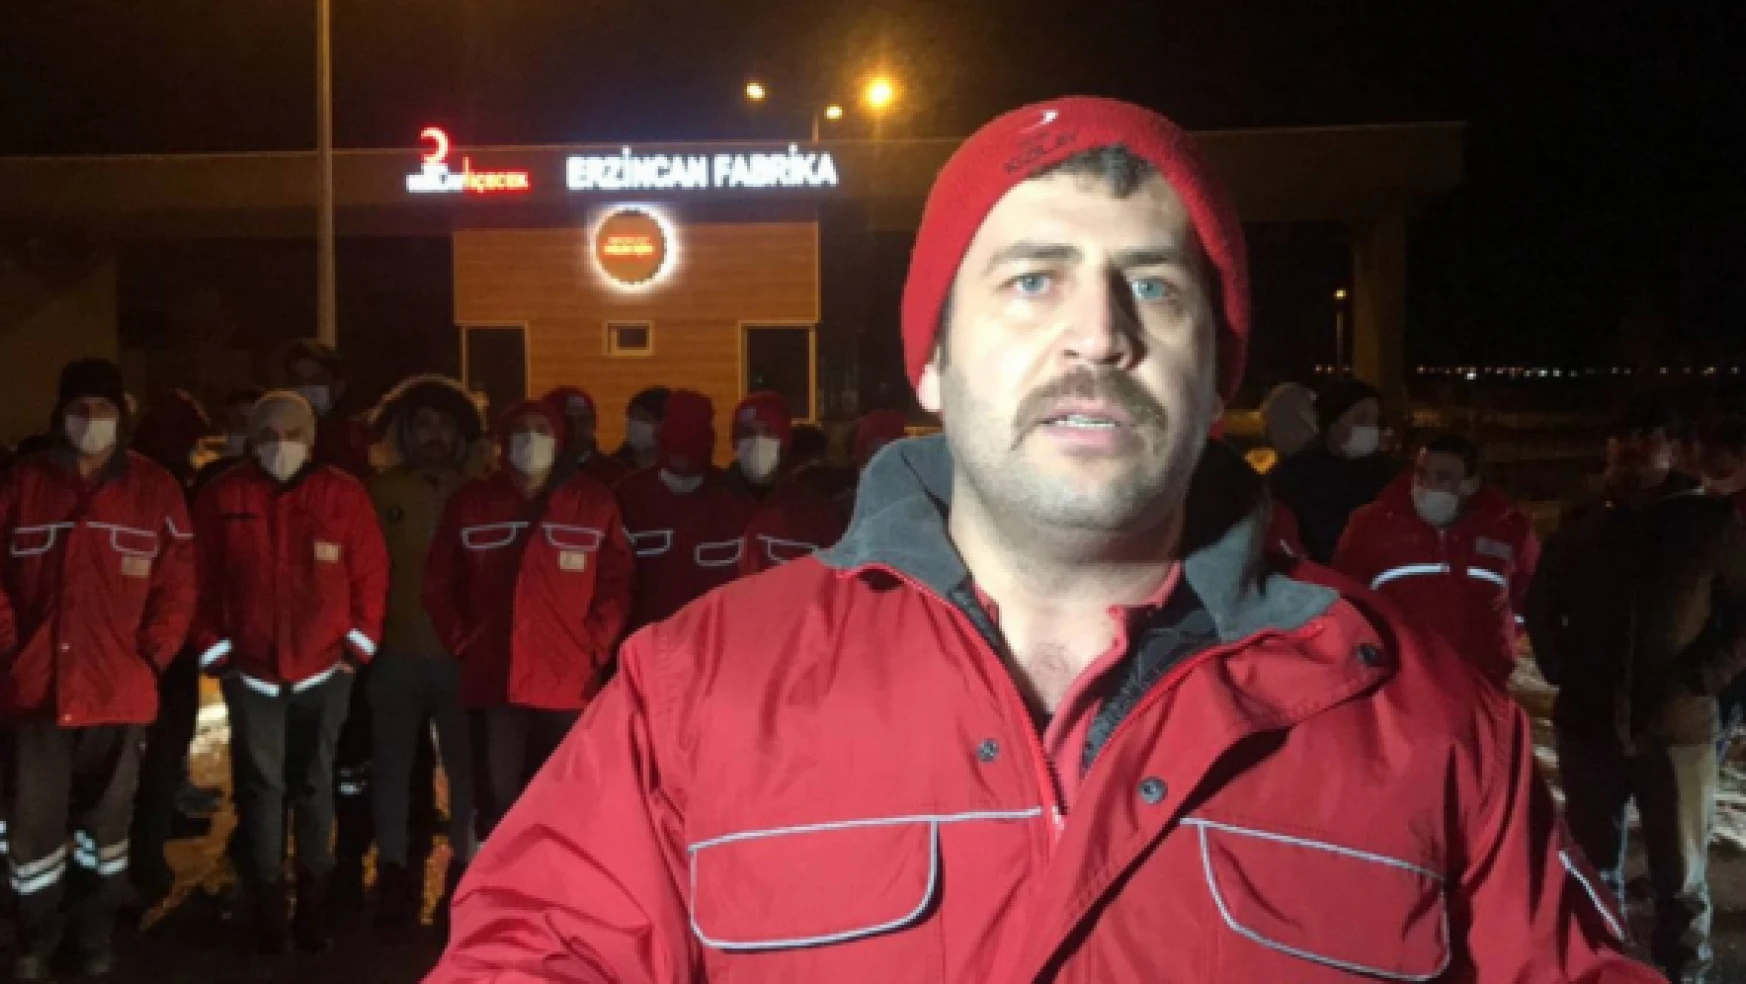 Kızılay İçecek Erzincan Fabrikası işçileri greve başladı!